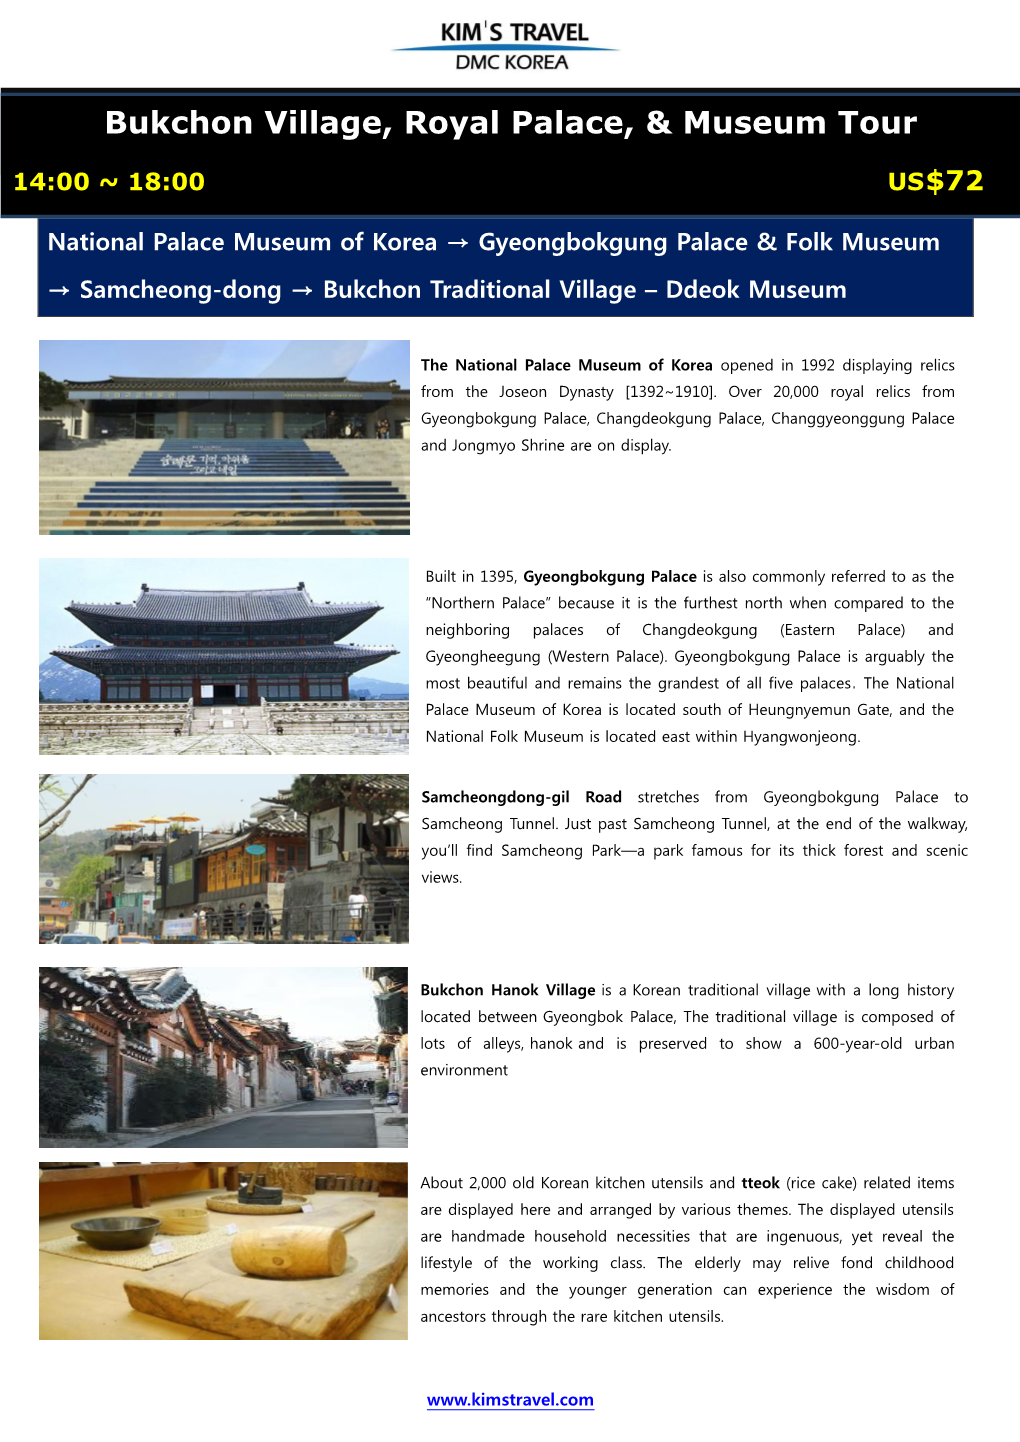 BUKCHON VILLAGE TOUR Bukchon Village, Royal Palace, & Museum Tour